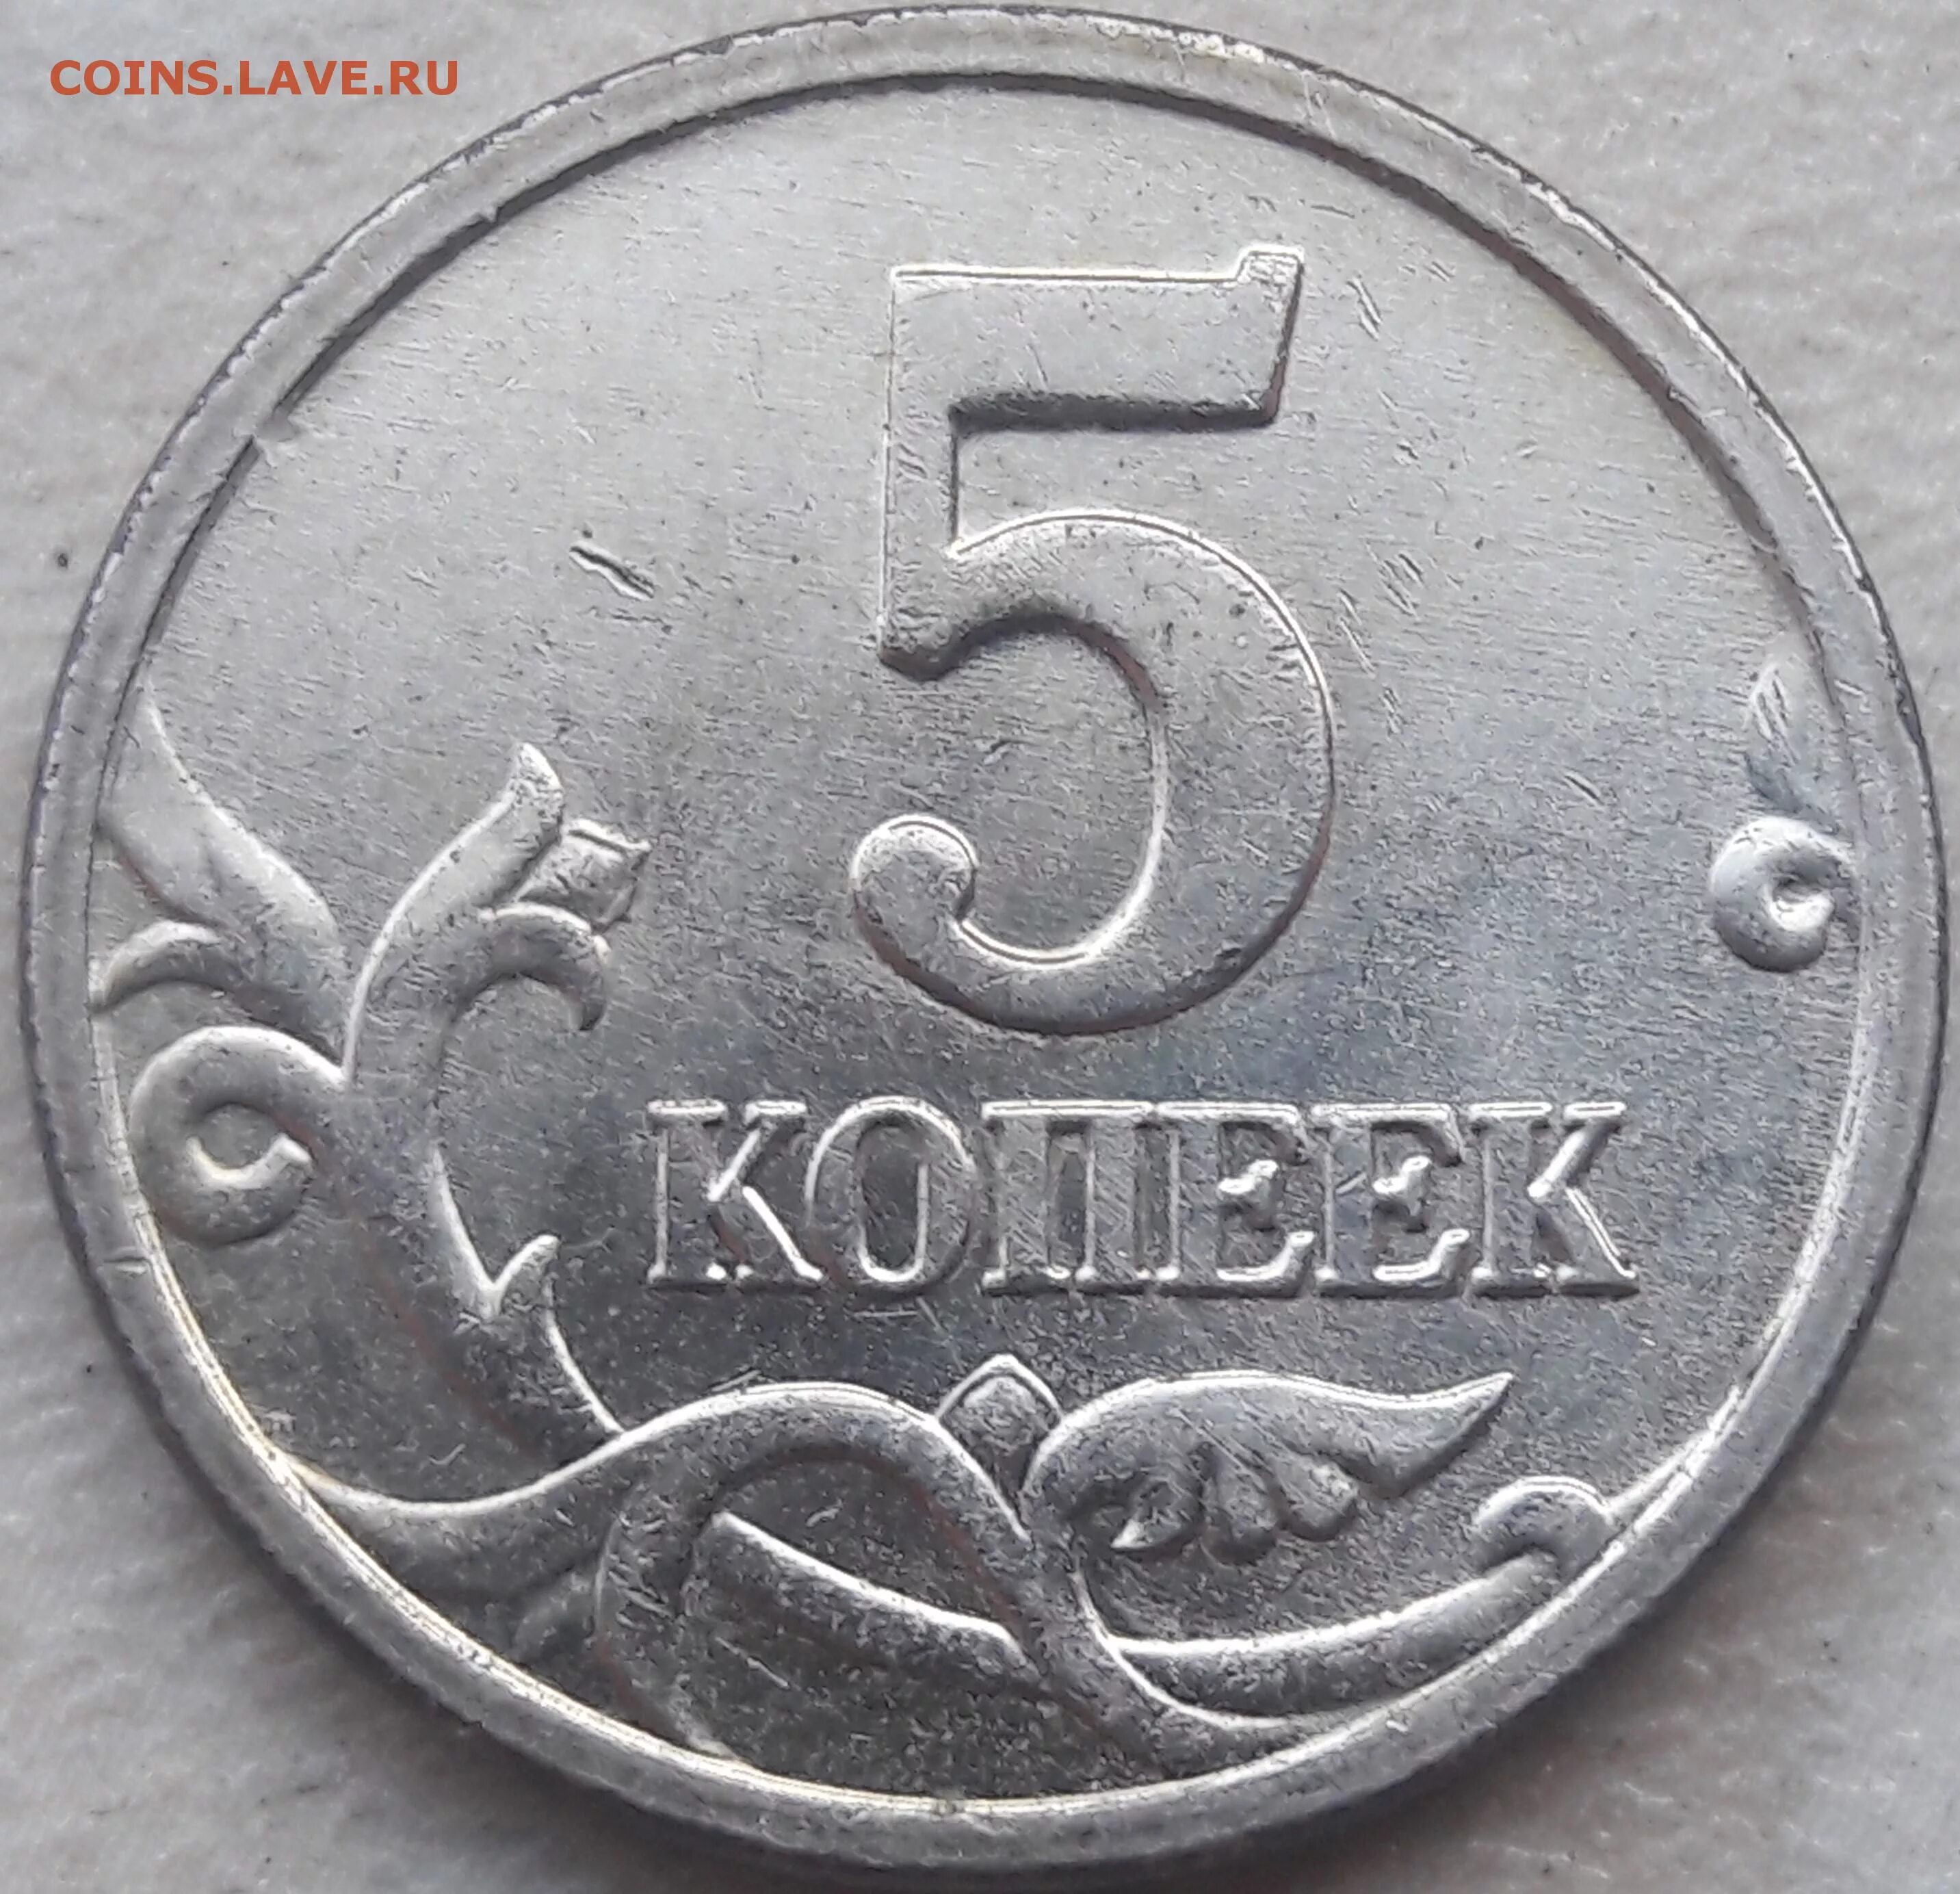 5 рублей 80. 5 Копеек 2005 м. Штемпель 2 3 5 копеек 2003. Пять копеек 90 года м. Белый метал 5копеек 2005г.